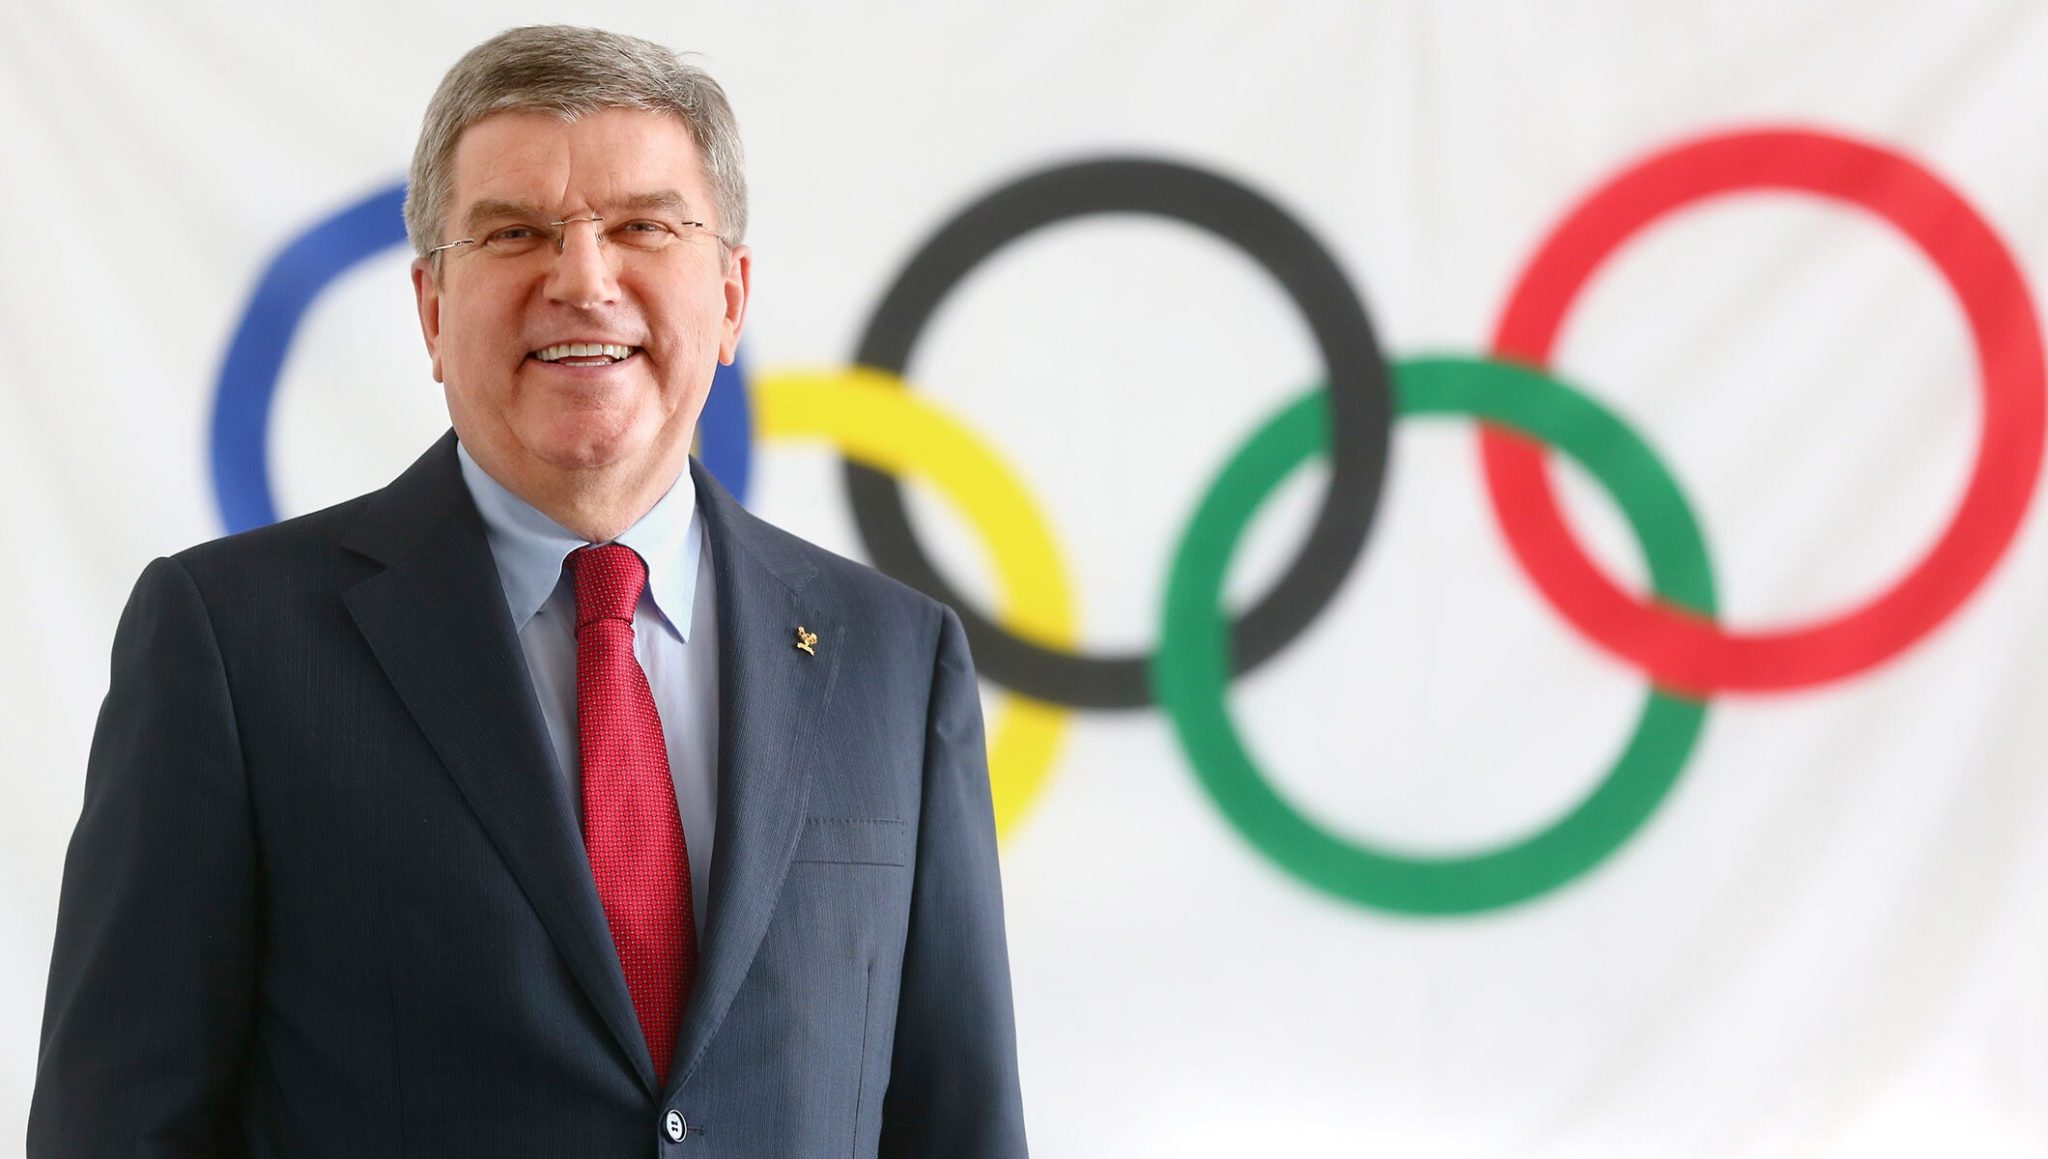 Olimpiadi, il Cio apre agli atleti russi e bielorussi ma c'è chi minaccia di boicottare